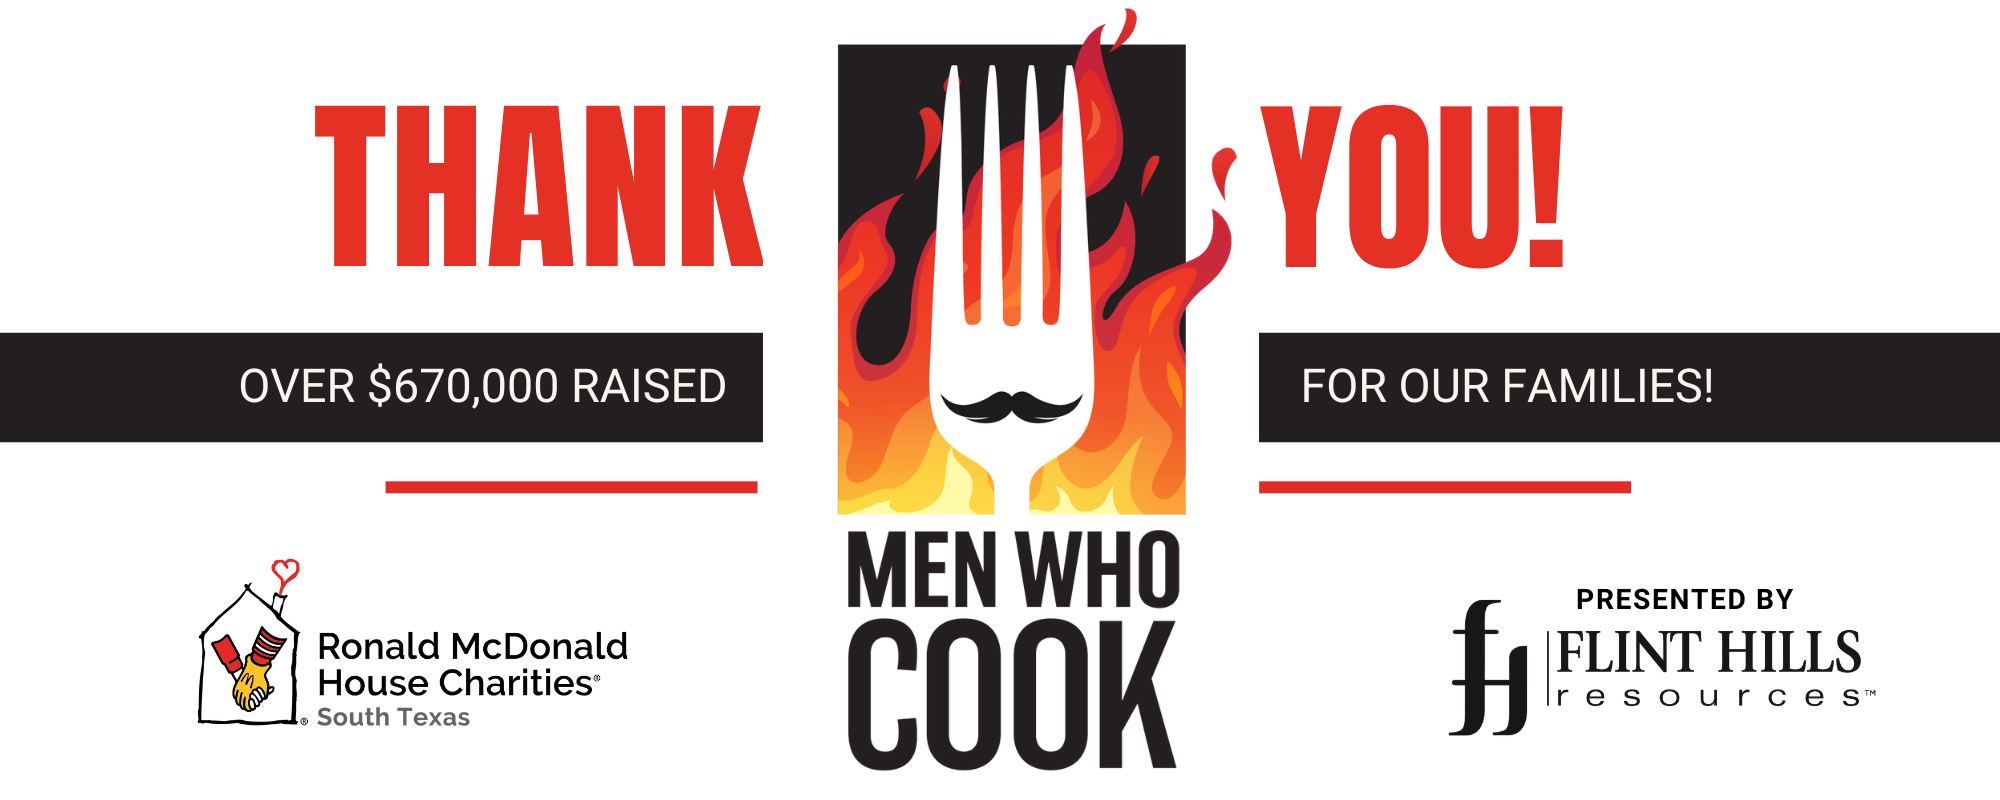 Men Who Cook thank you 